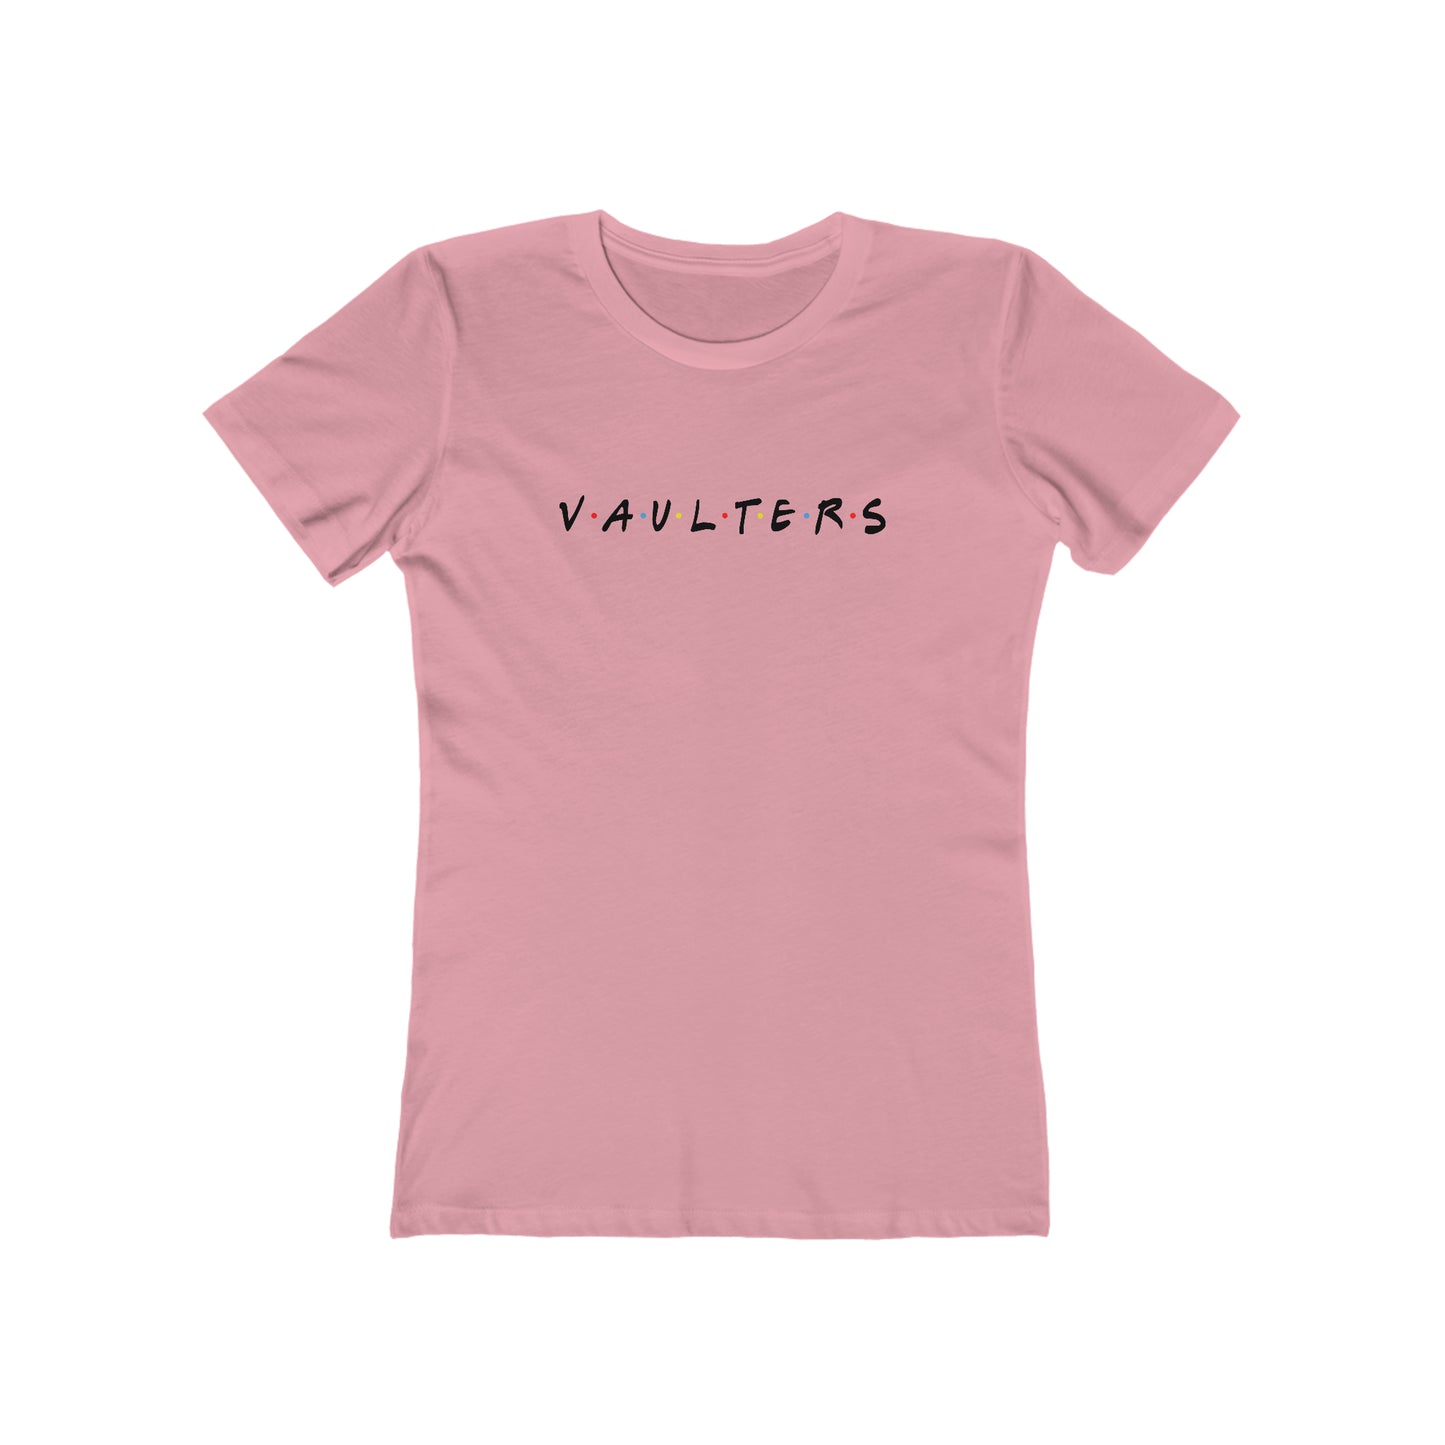 Vaulters - Women's Premium Tee